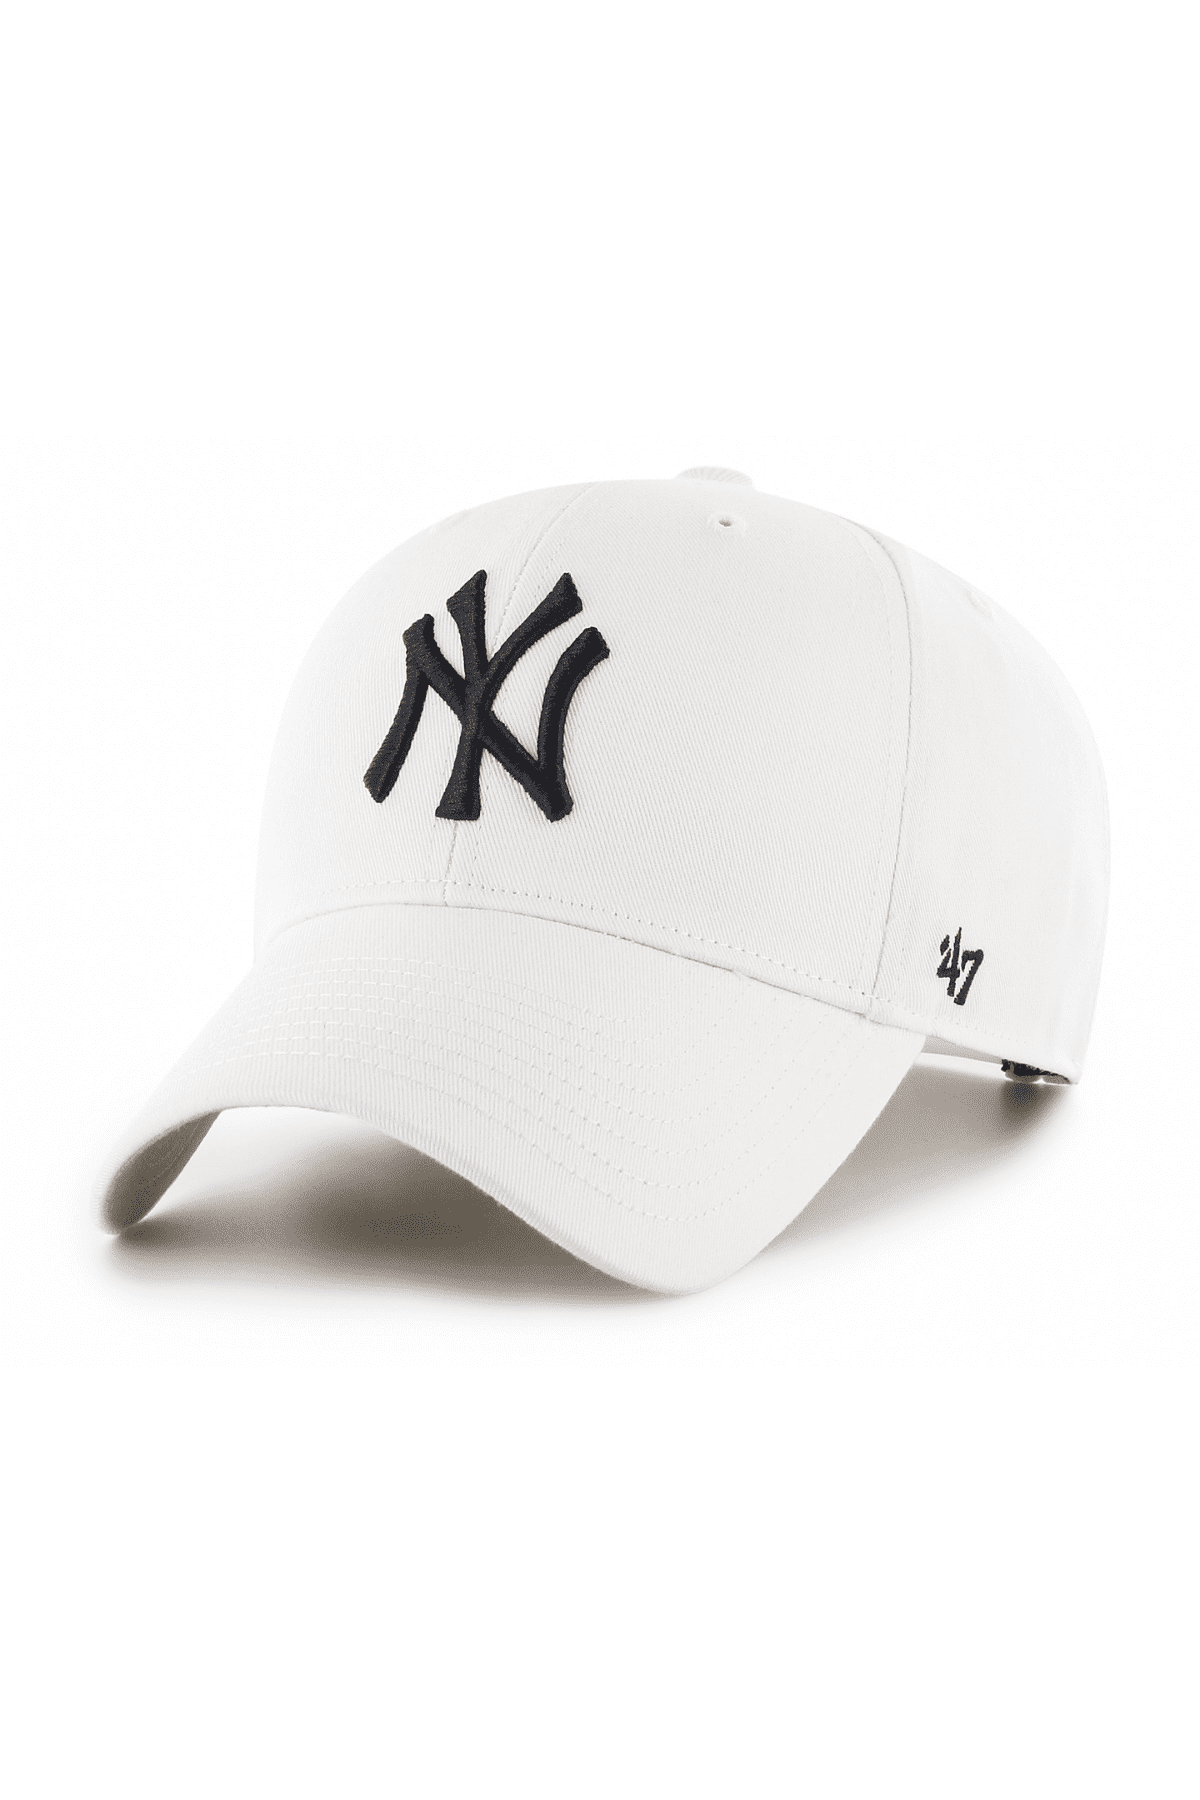 כובע מצחייה - 47 MVP NY עם הדפס New York Yankees לבן-47-One size-נאקו